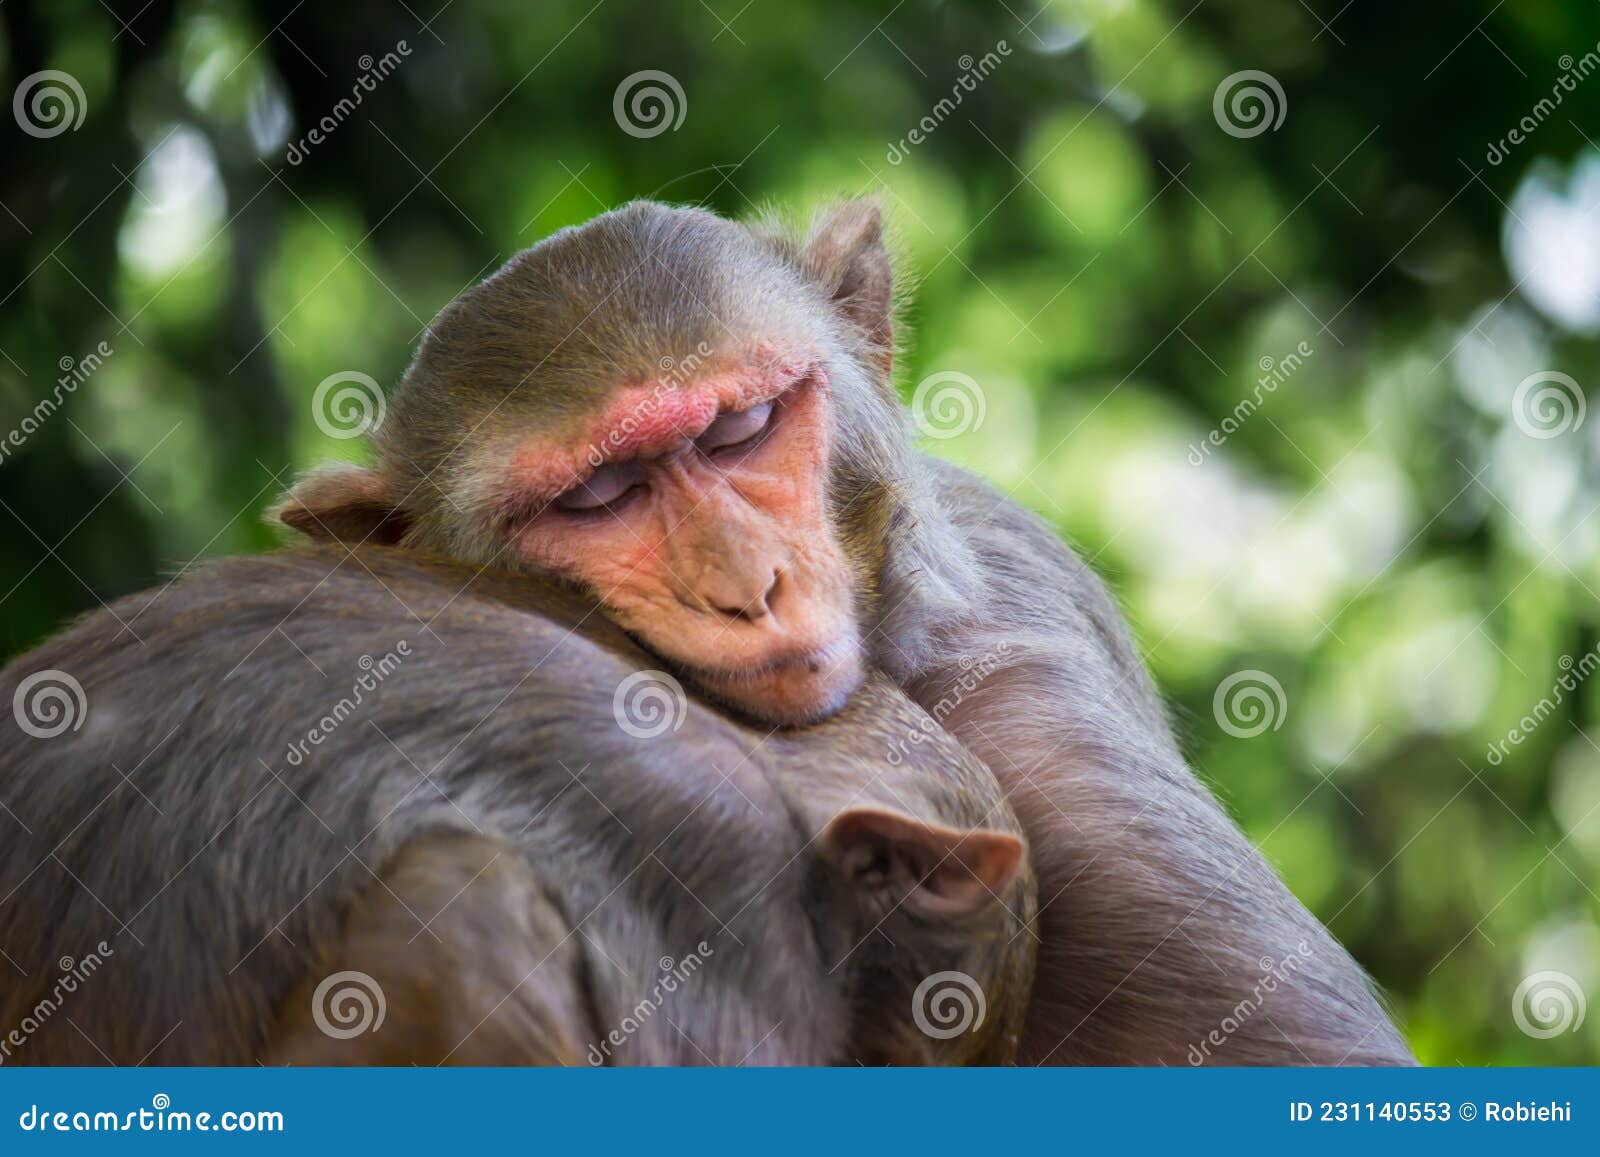 Macacos engraçados foto de stock. Imagem de fofofo, naughty - 60609812